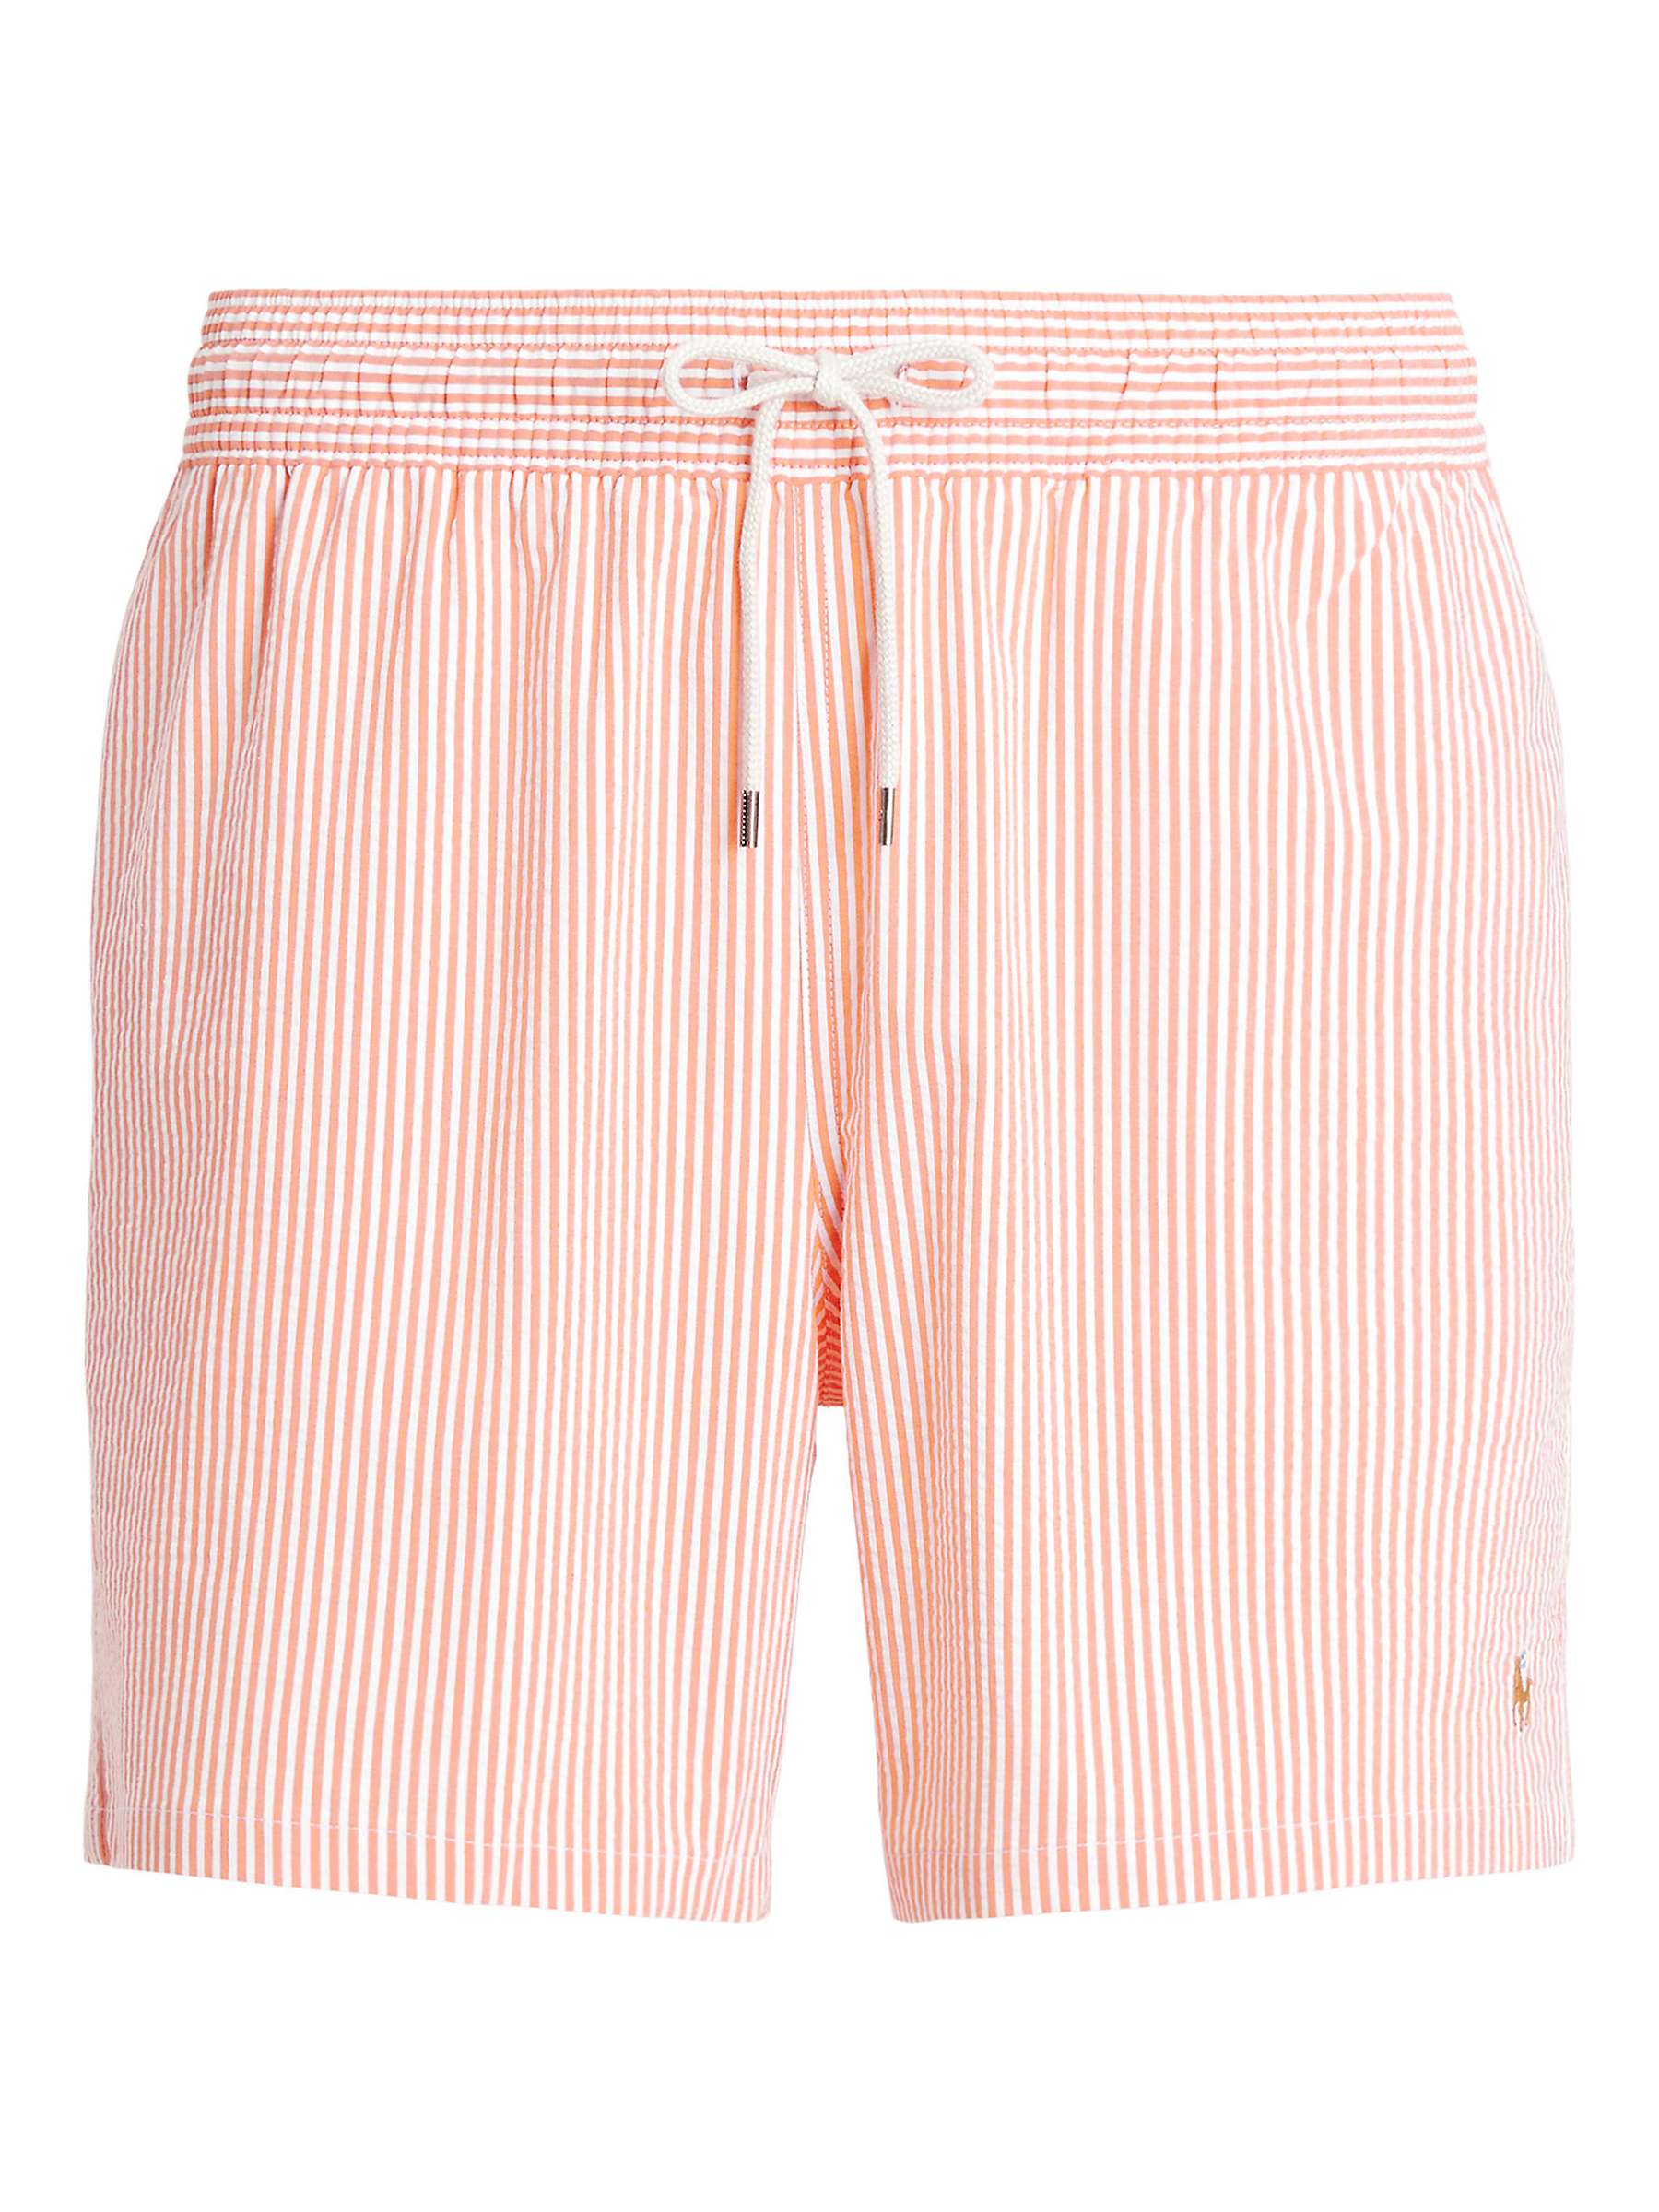 Buy Ralph Lauren Seersucker Mesh Lined Swim Shorts, Orange Online at johnlewis.com